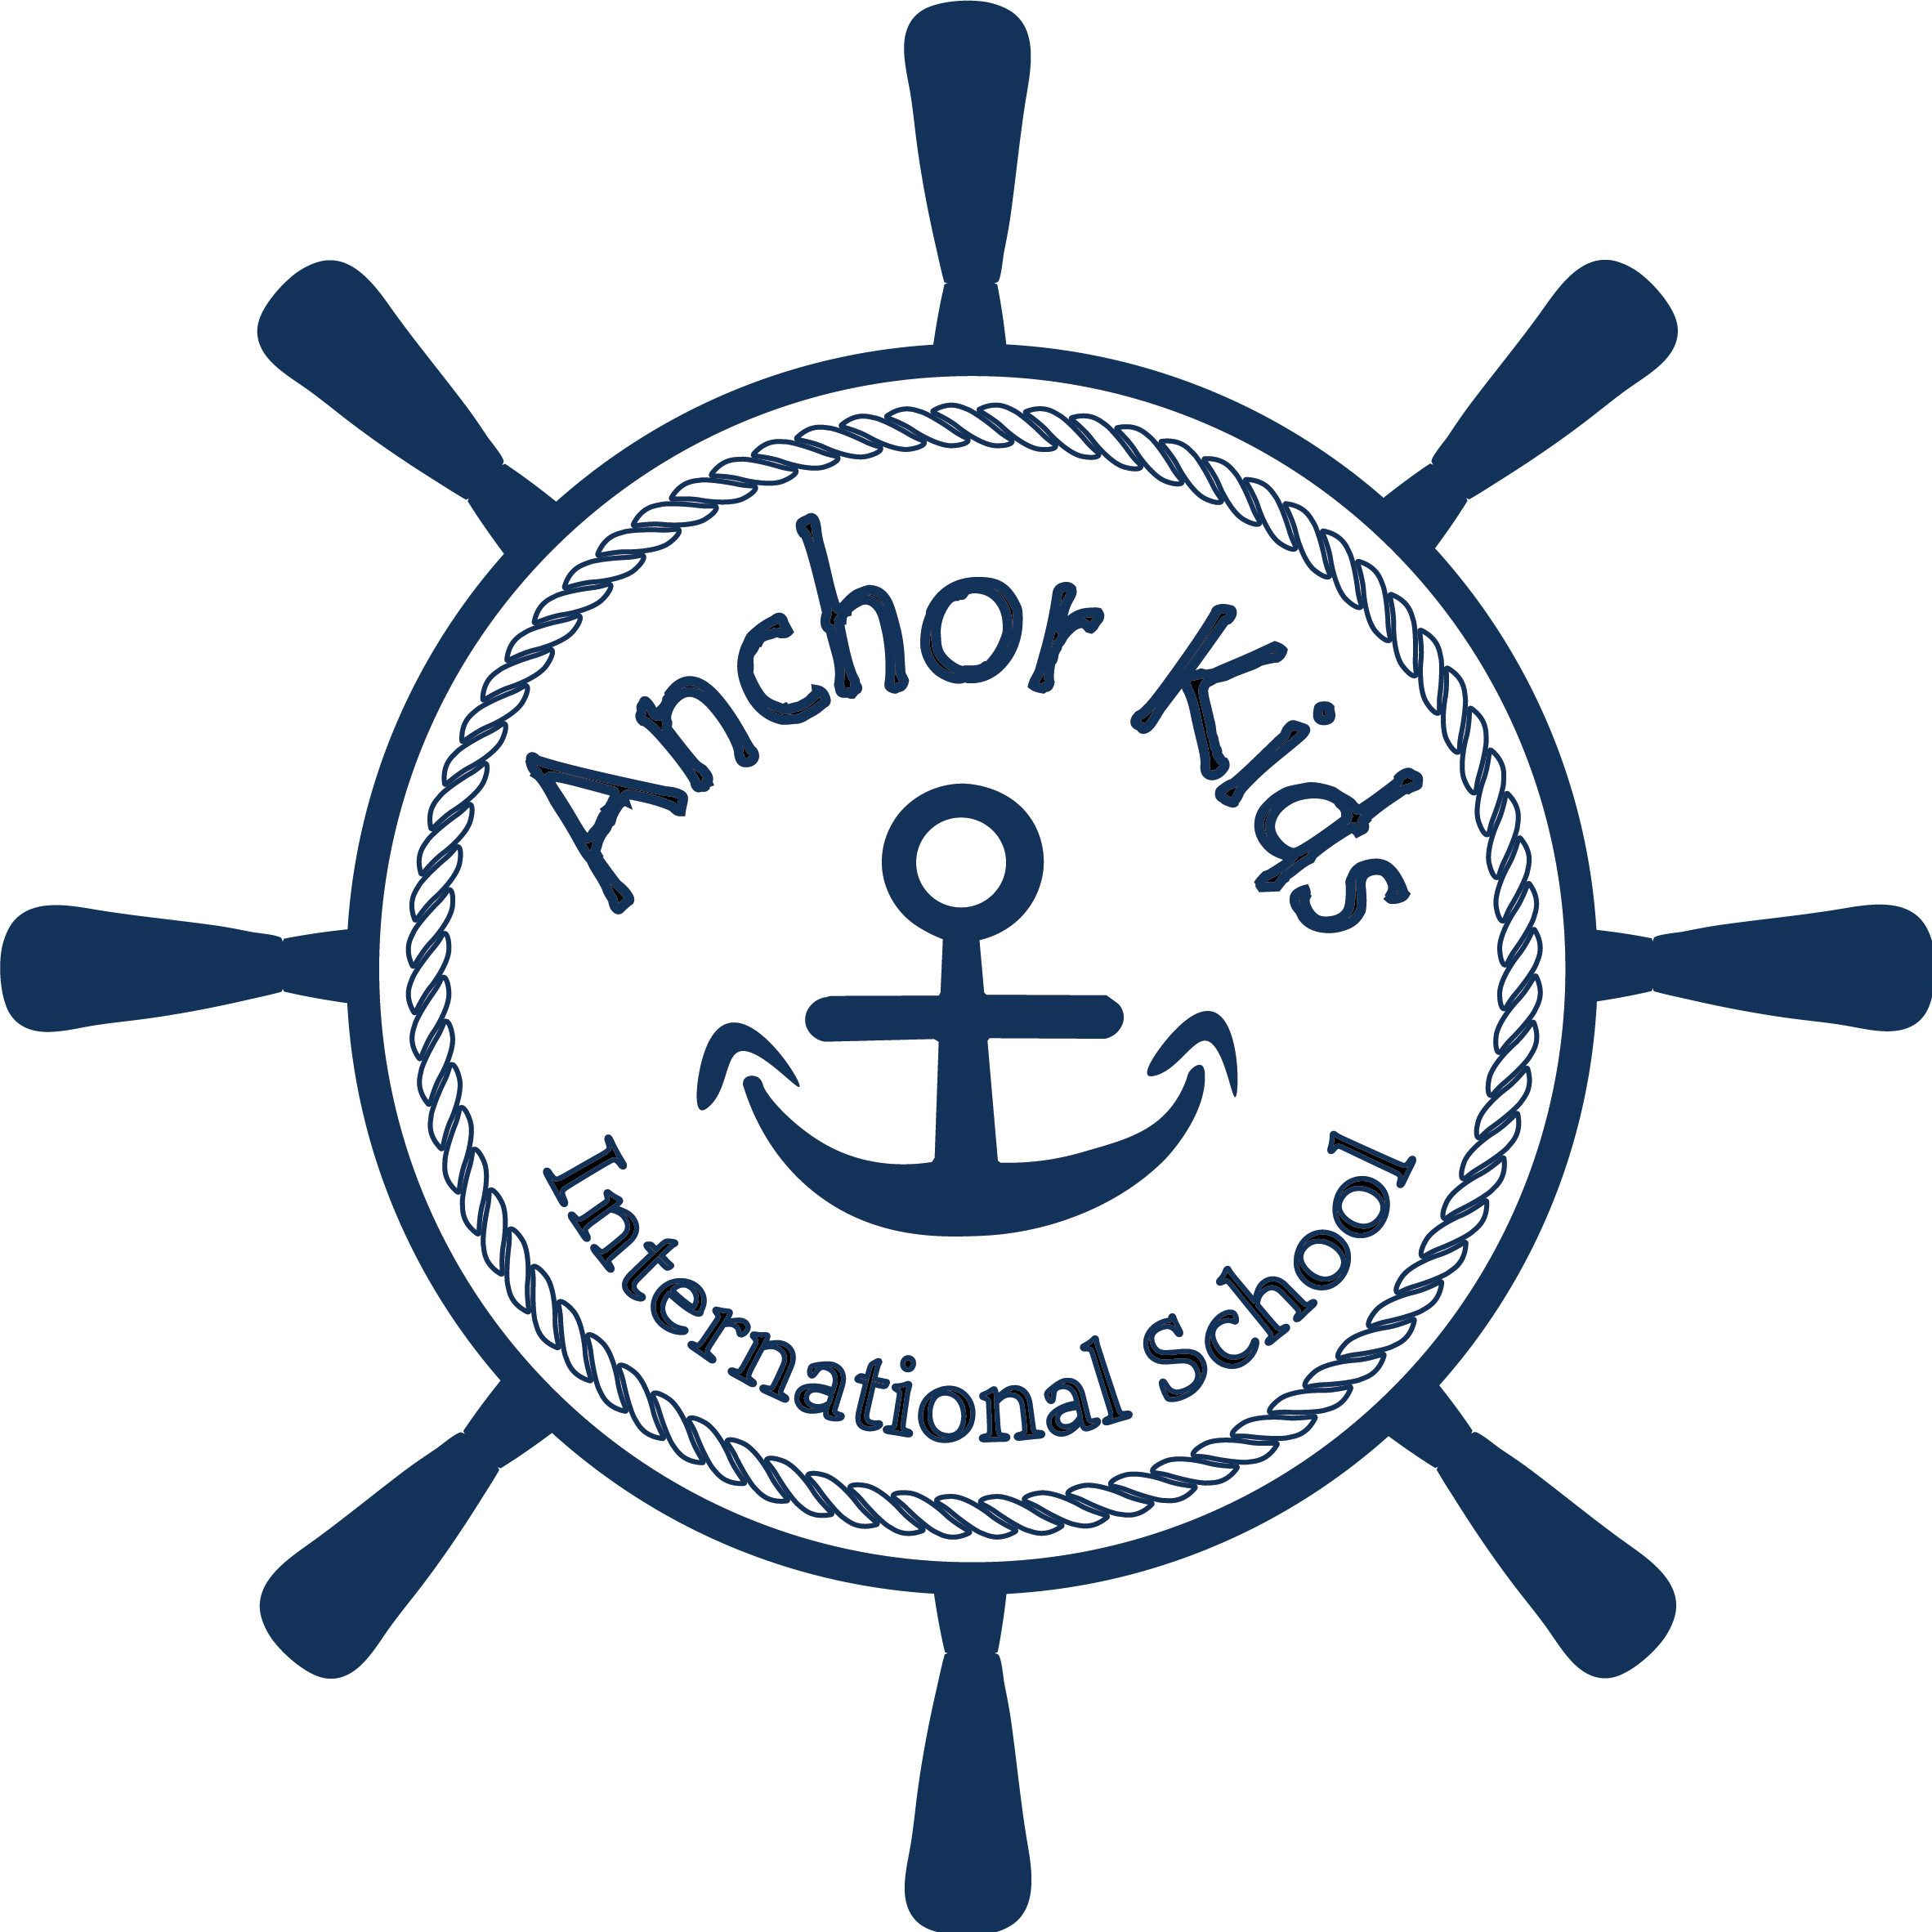 Anchor Kids International School in Kanda, Chiyoda-ku, Tokyo